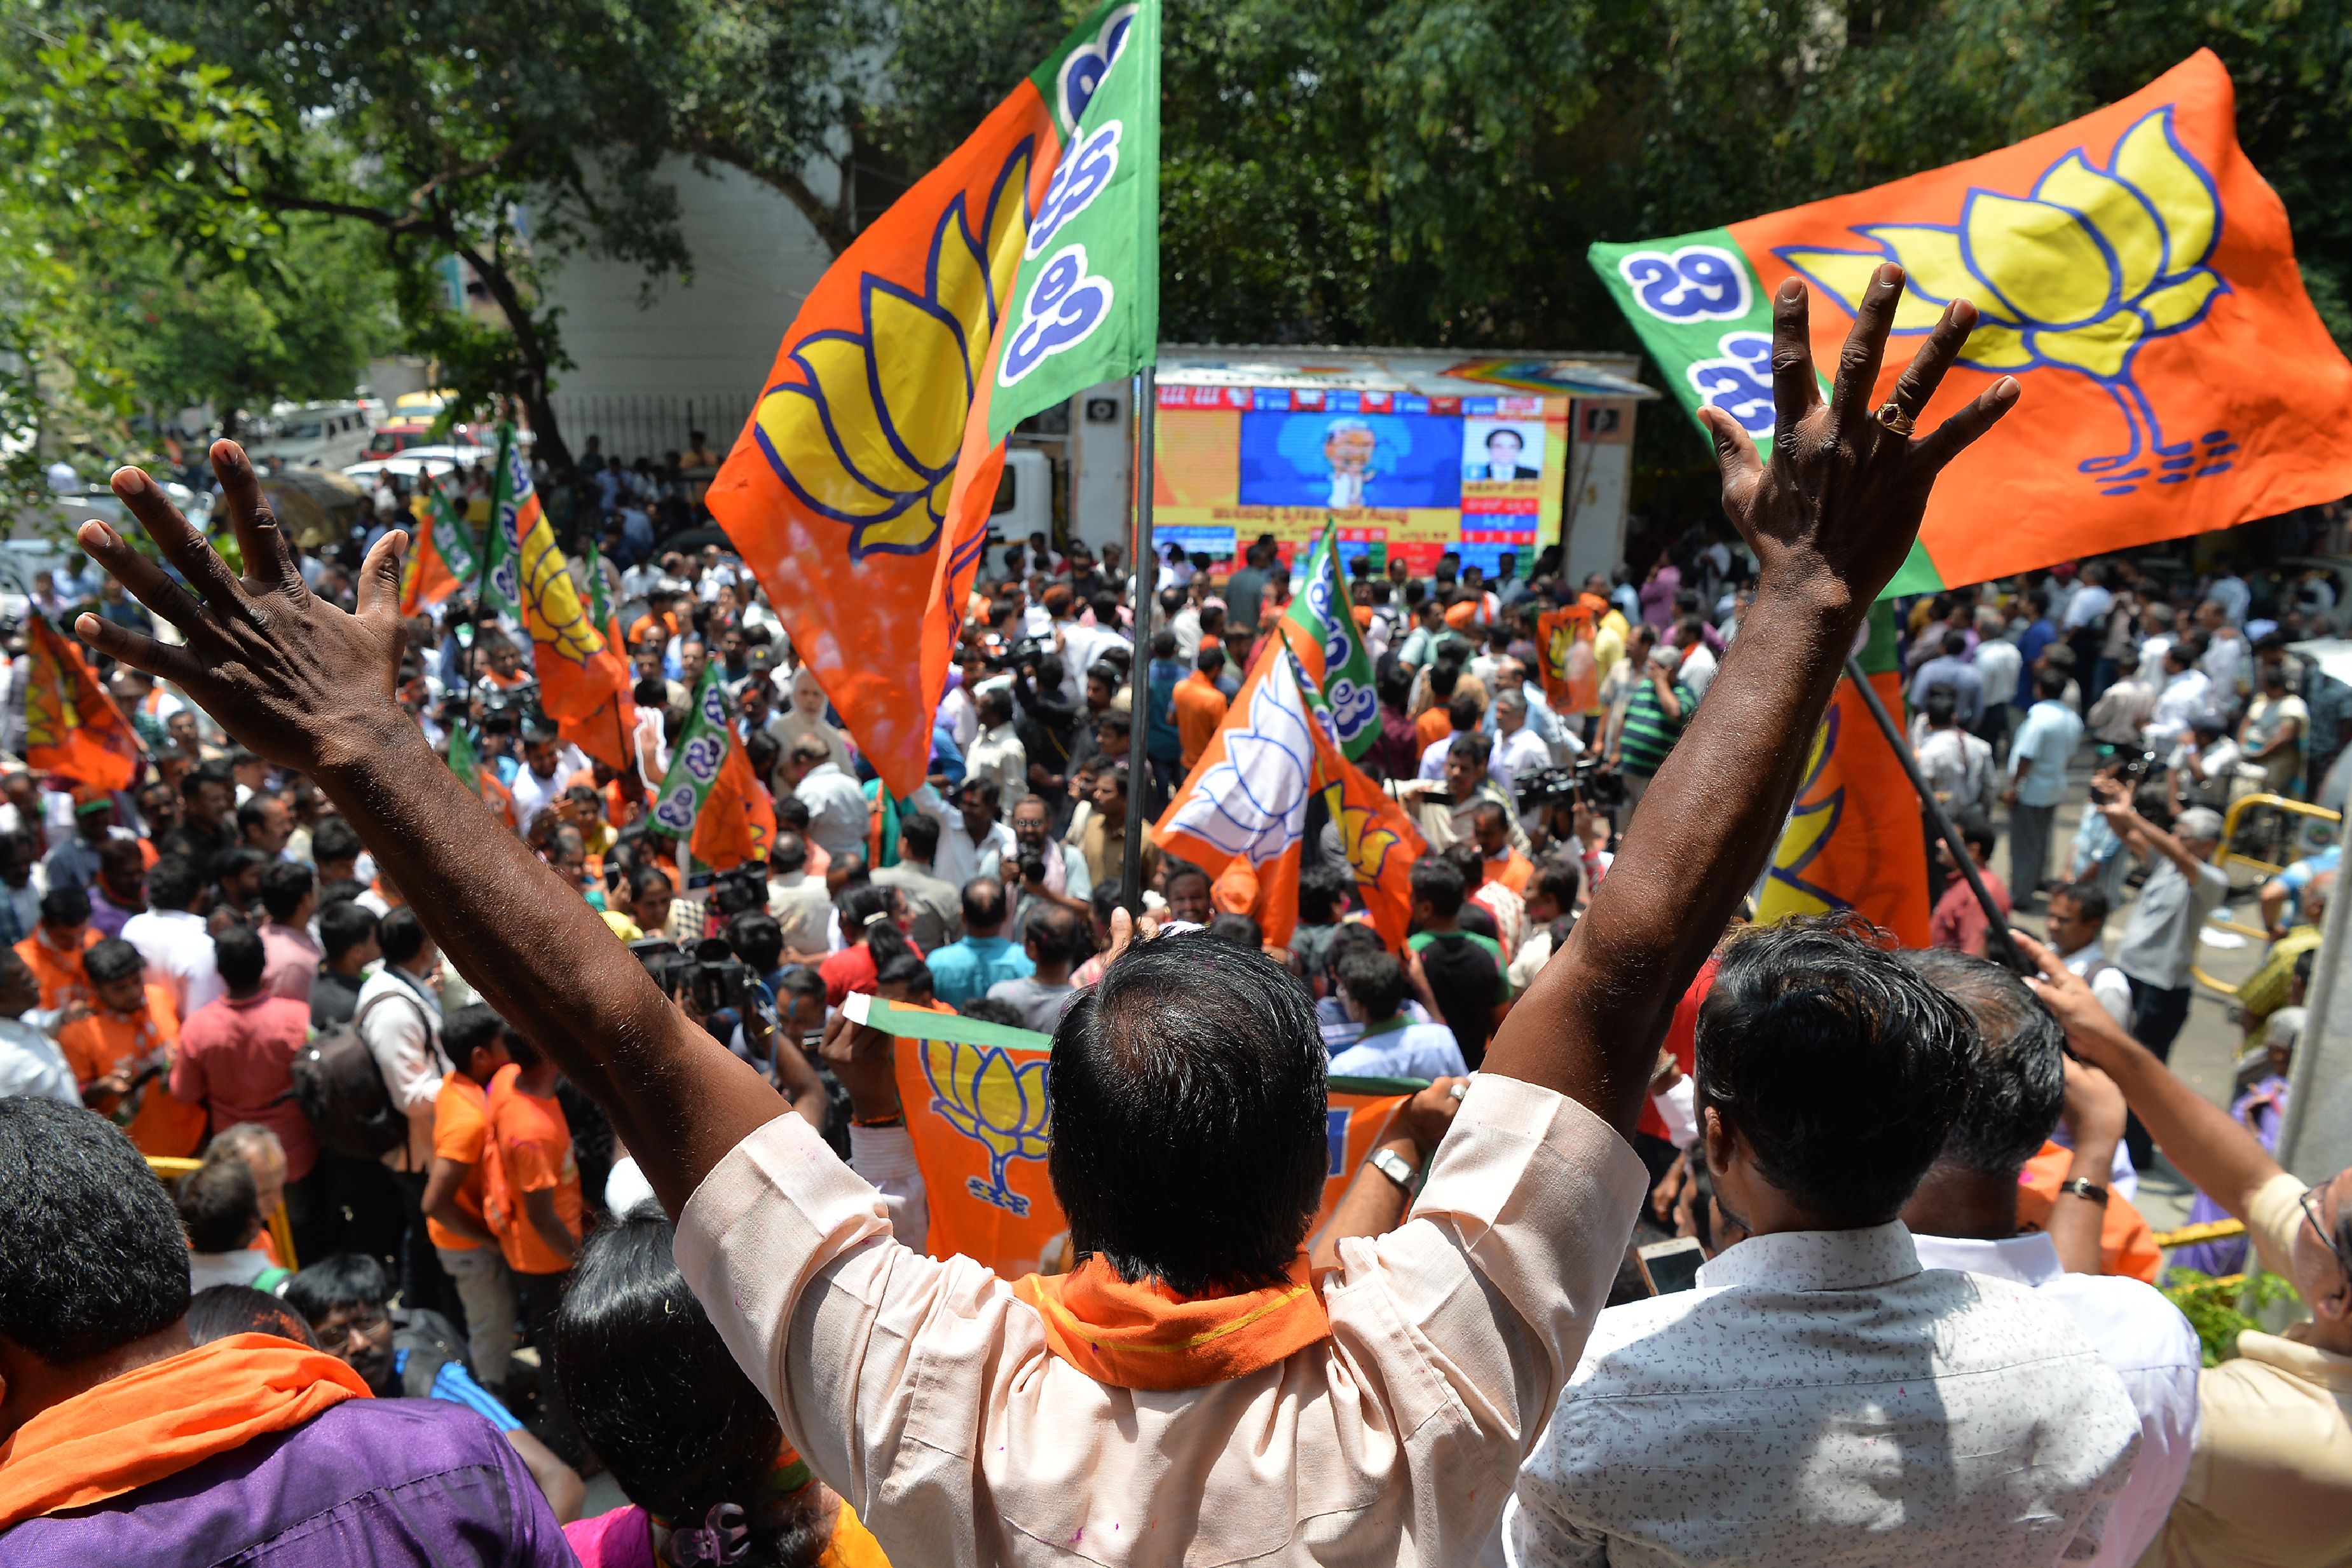 صور احتفالات الحزب الحاكم فى الهند بنتائج الانتخابات